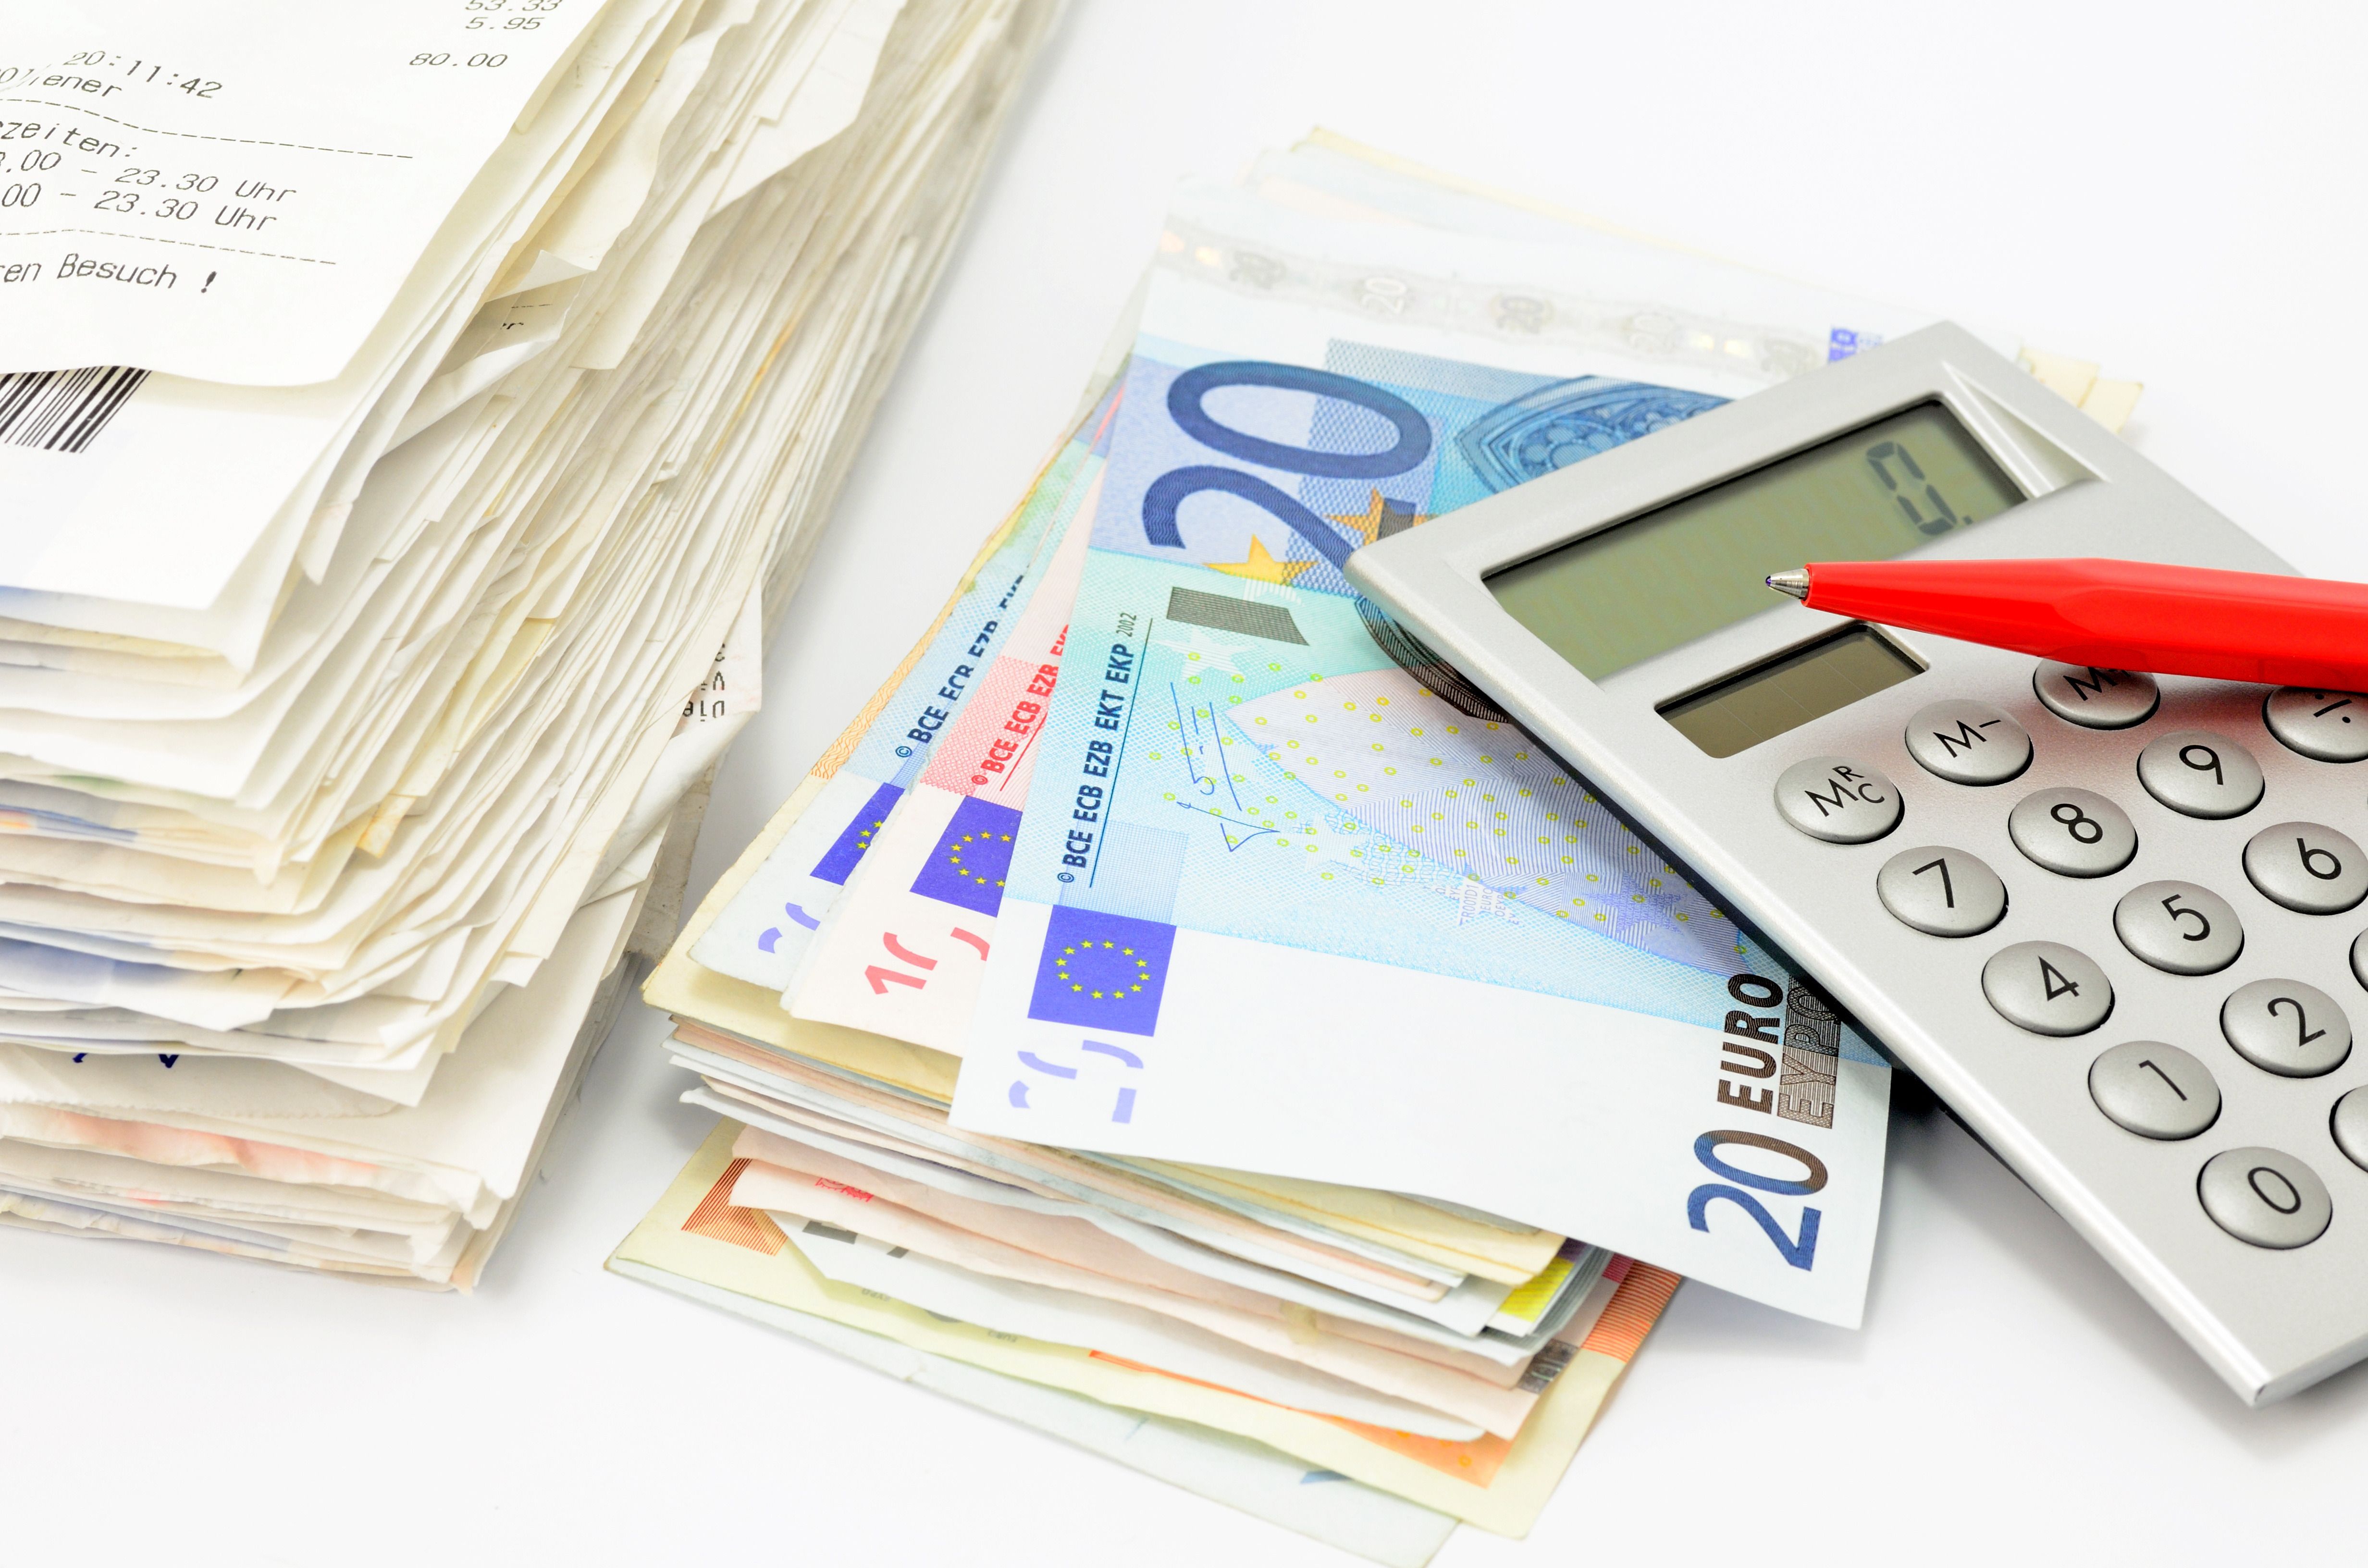 Das Bild zeigt einen Rechnungs- und einen Geldstapel mit Taschenrechner und Stift